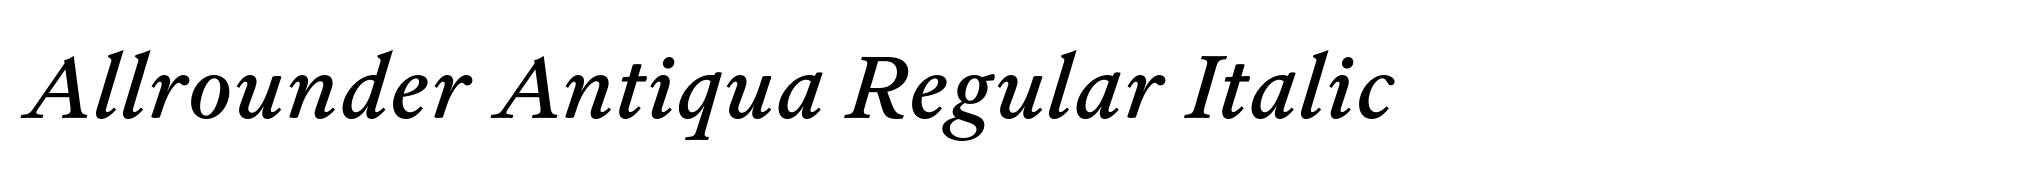 Allrounder Antiqua Regular Italic image